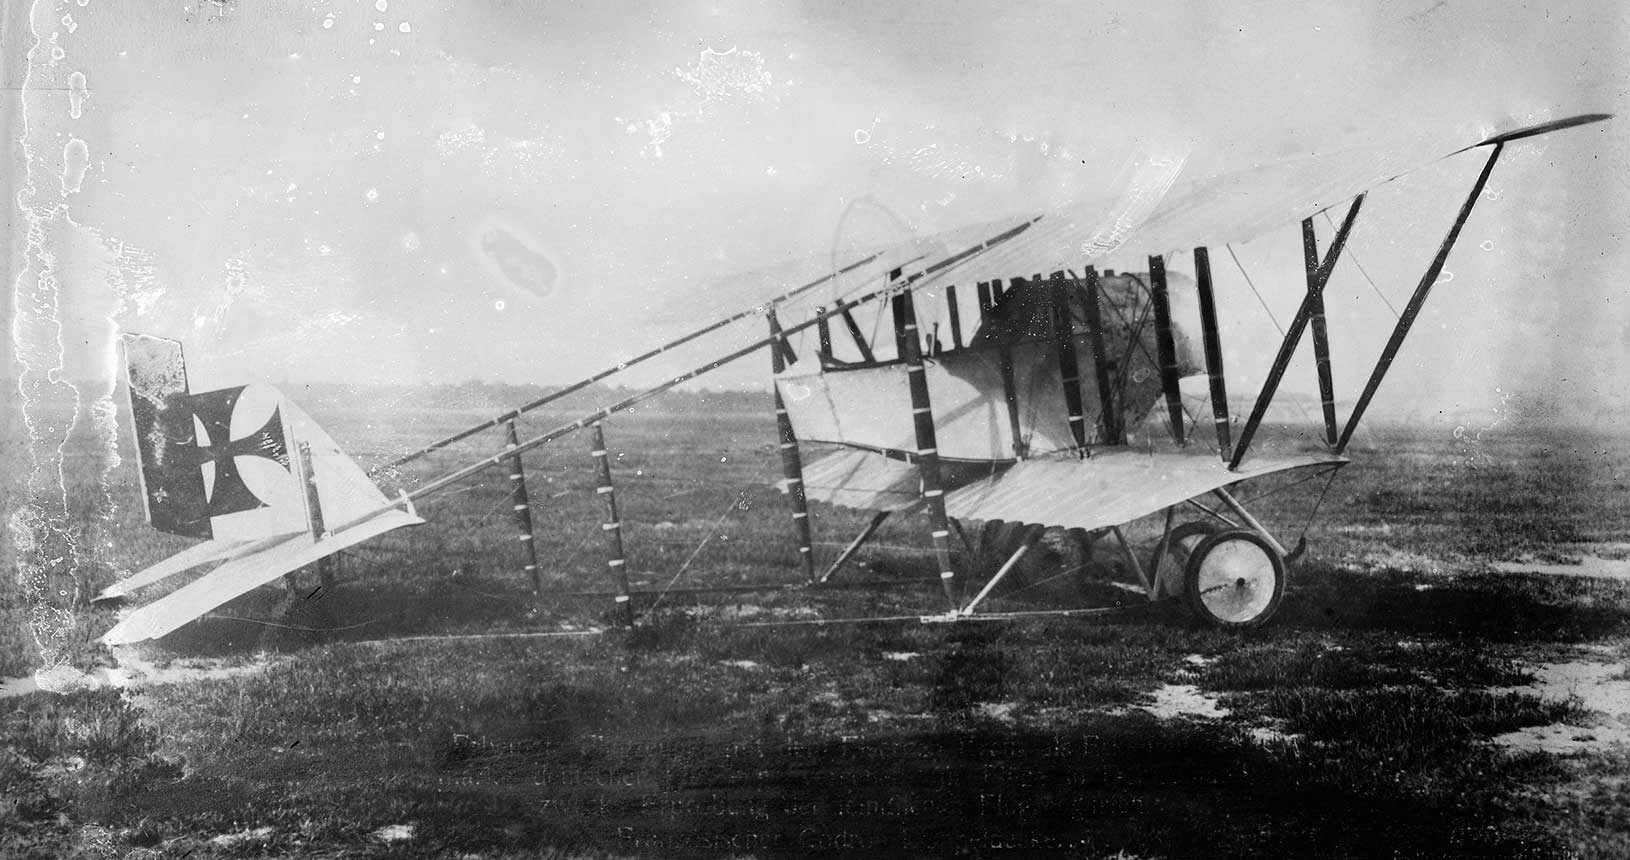 Französischer Doppeldecker Caudron G-III, ca. 1916, von deutschen Truppen erbeutet (Public Domain)